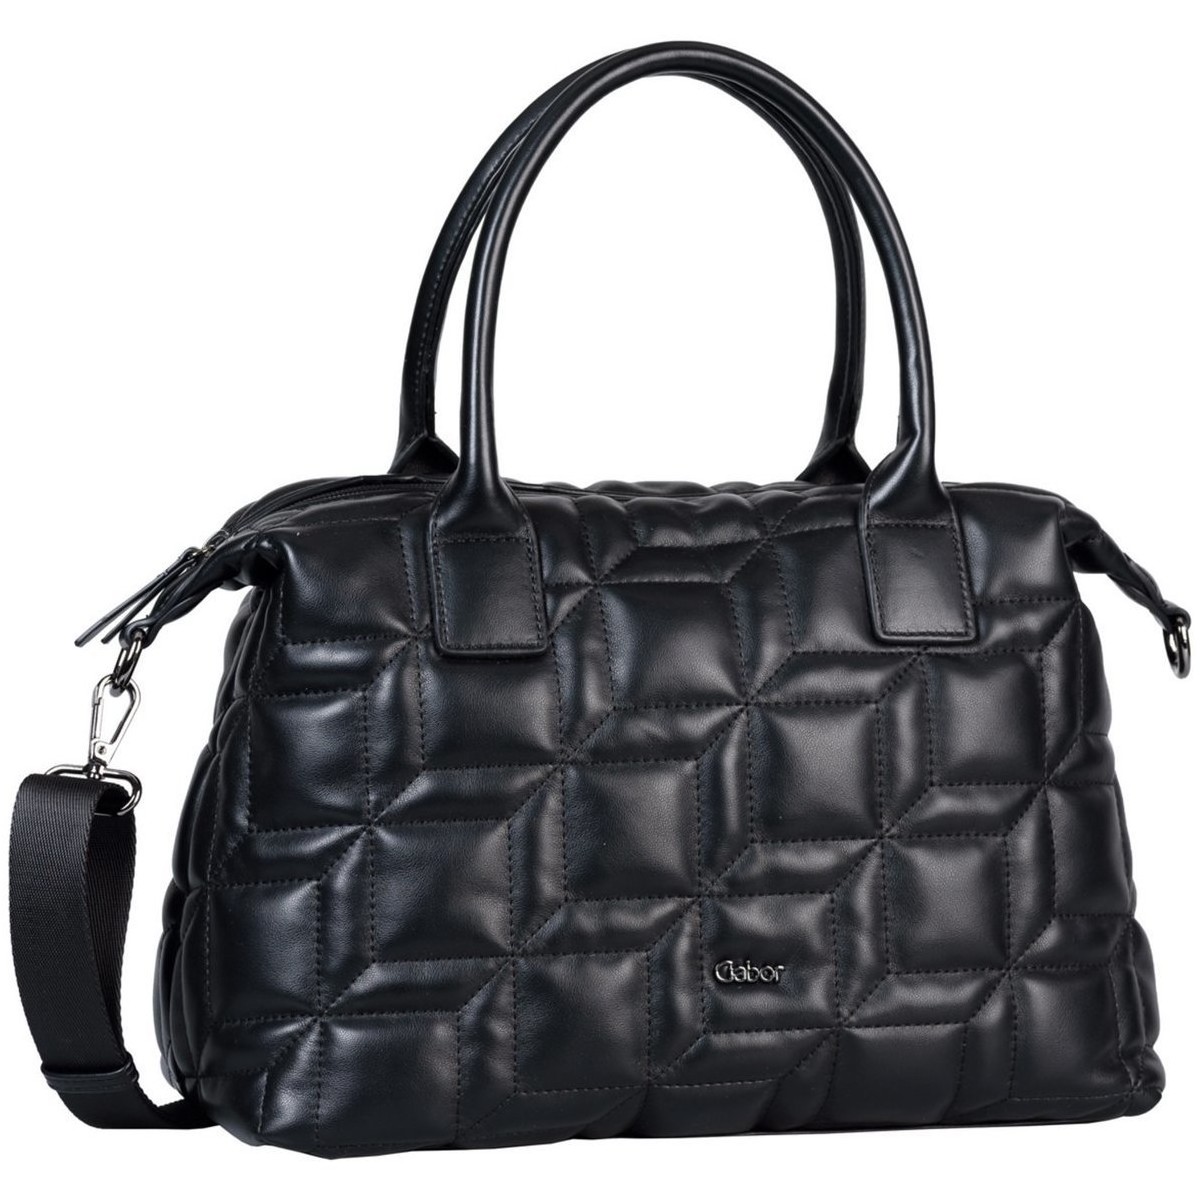 Taschen Damen Handtasche Gabor Mode Accessoires 8969 60 60 Schwarz